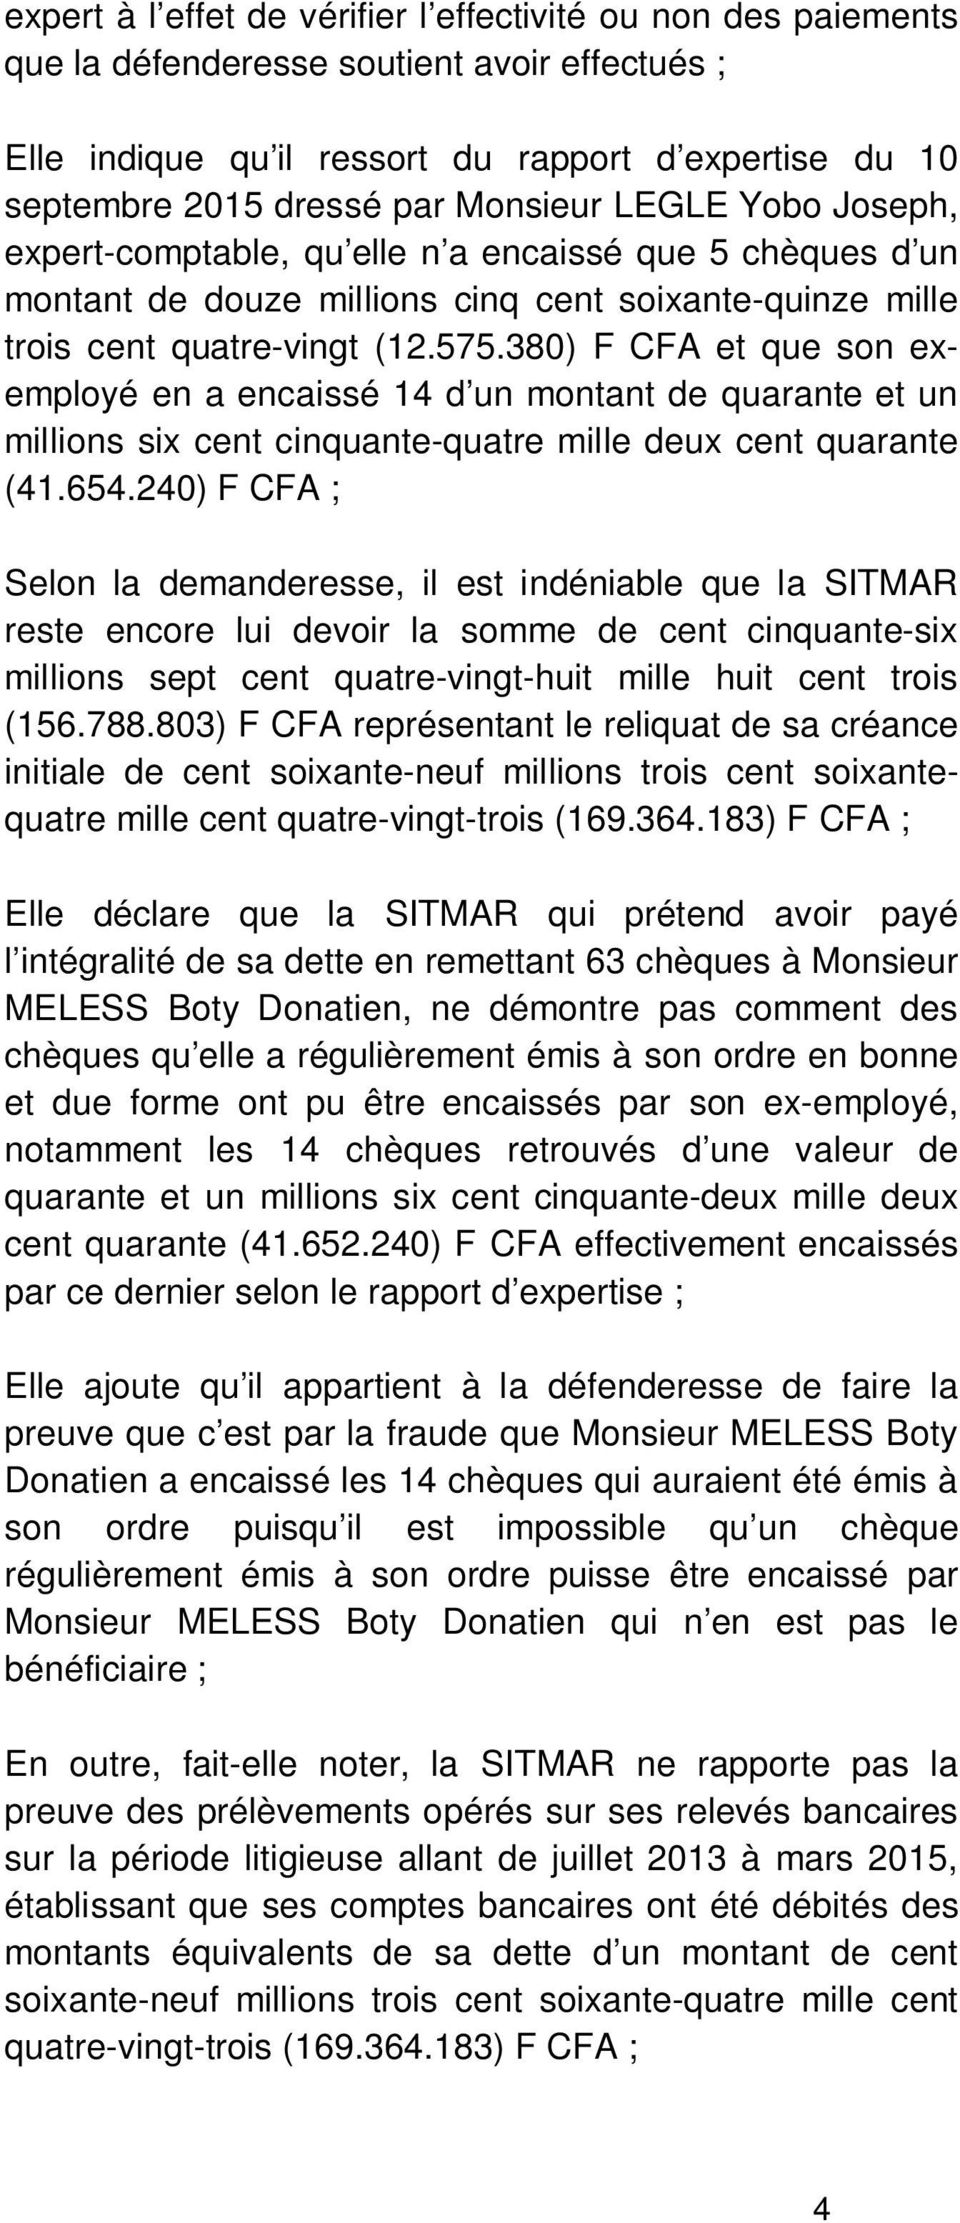 380) F CFA et que son exemployé en a encaissé 14 d un montant de quarante et un millions six cent cinquante-quatre mille deux cent quarante (41.654.